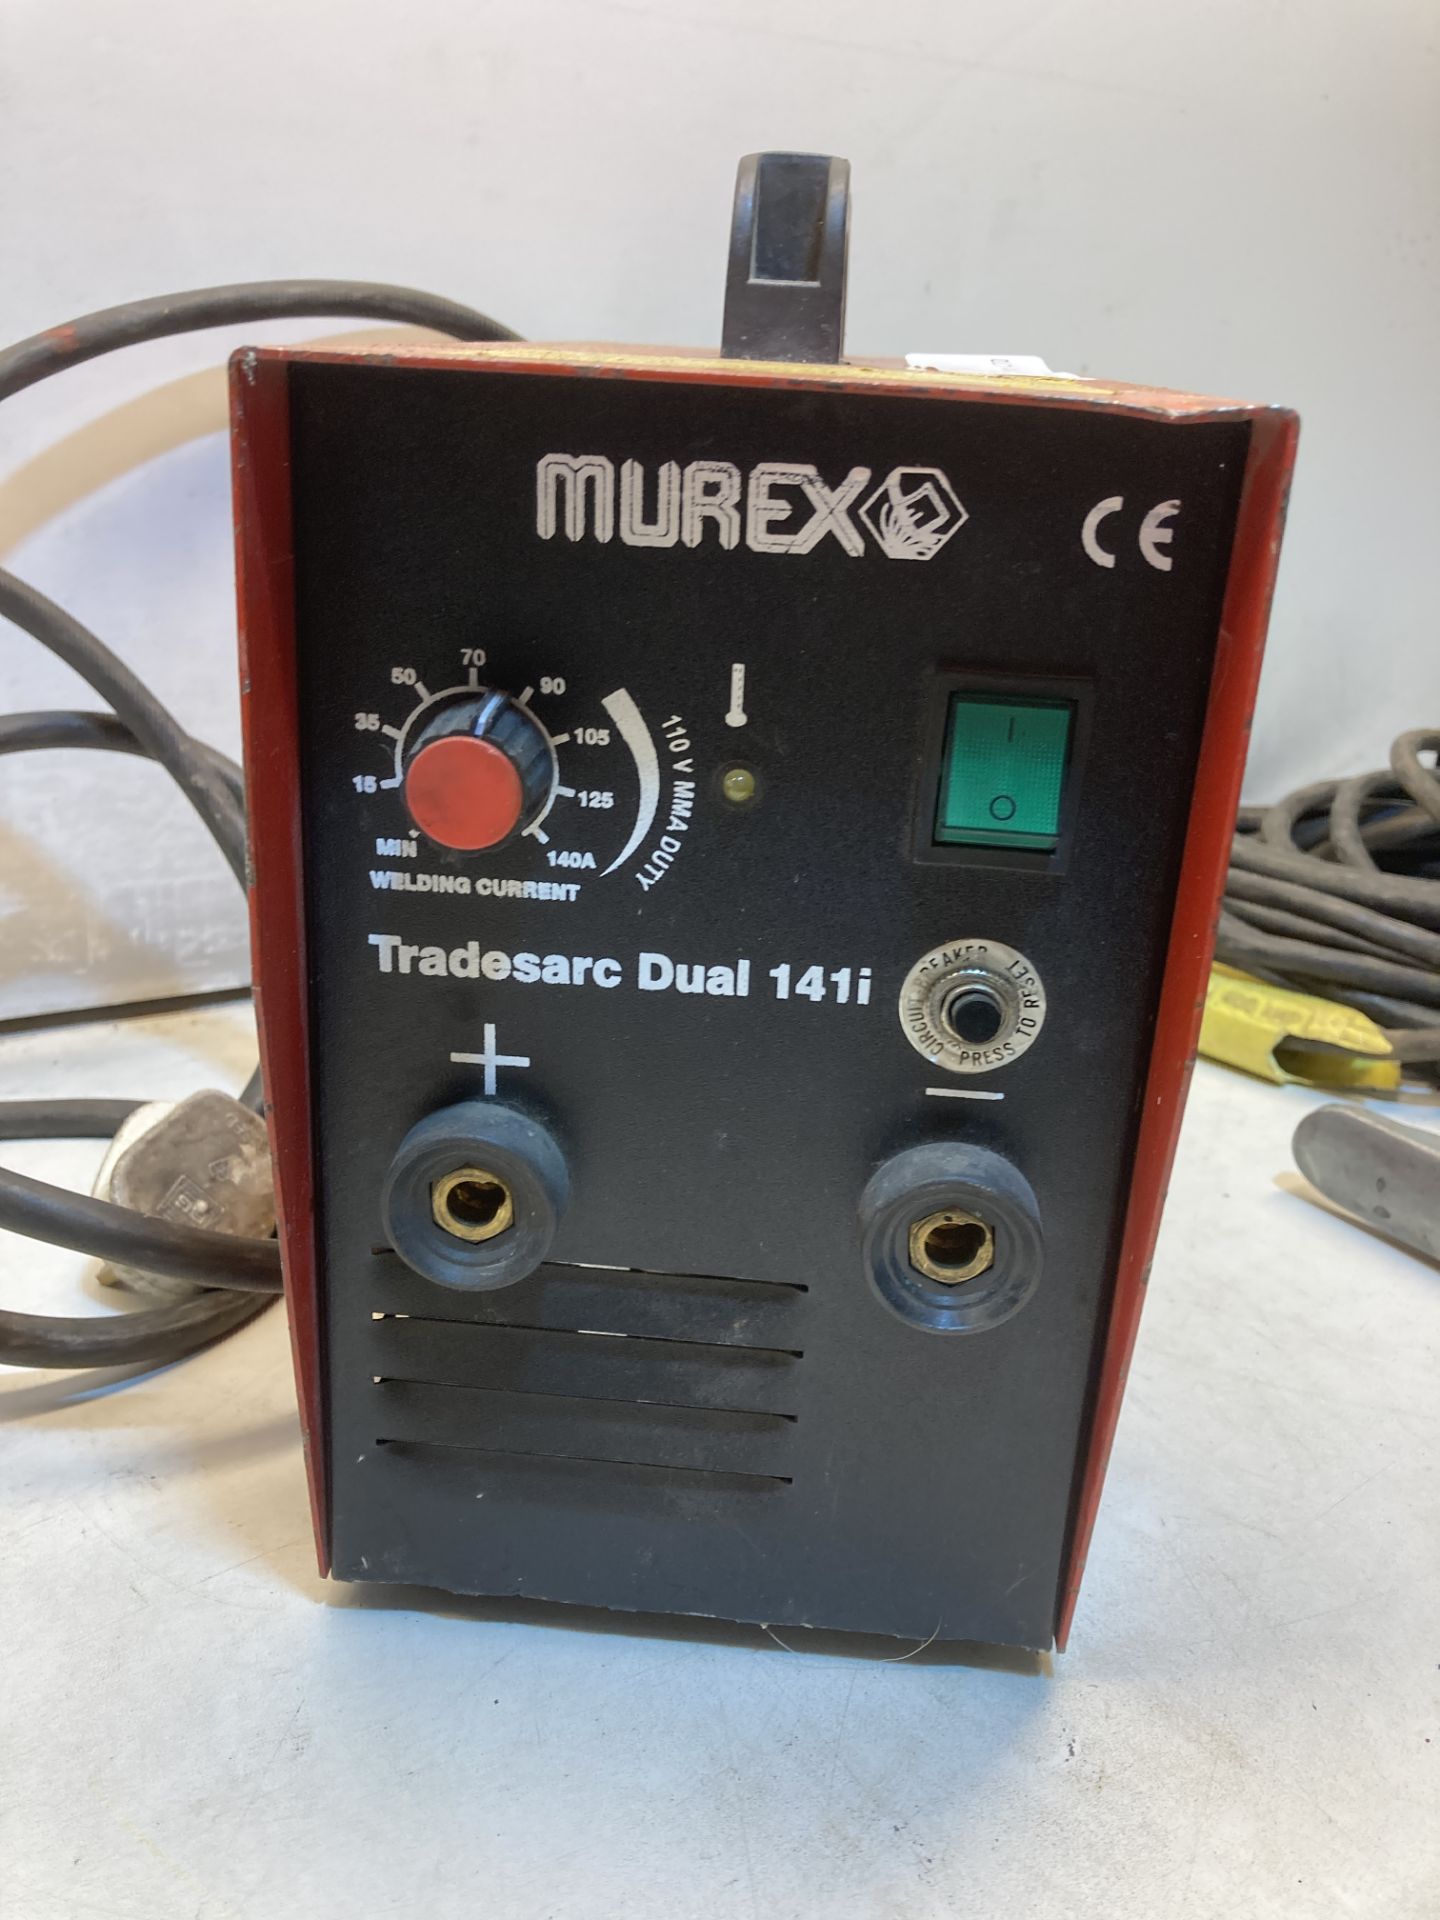 Murex Tradesarc Dual 141i Welder W/ Grounding Clamp & Electrode - Image 3 of 6